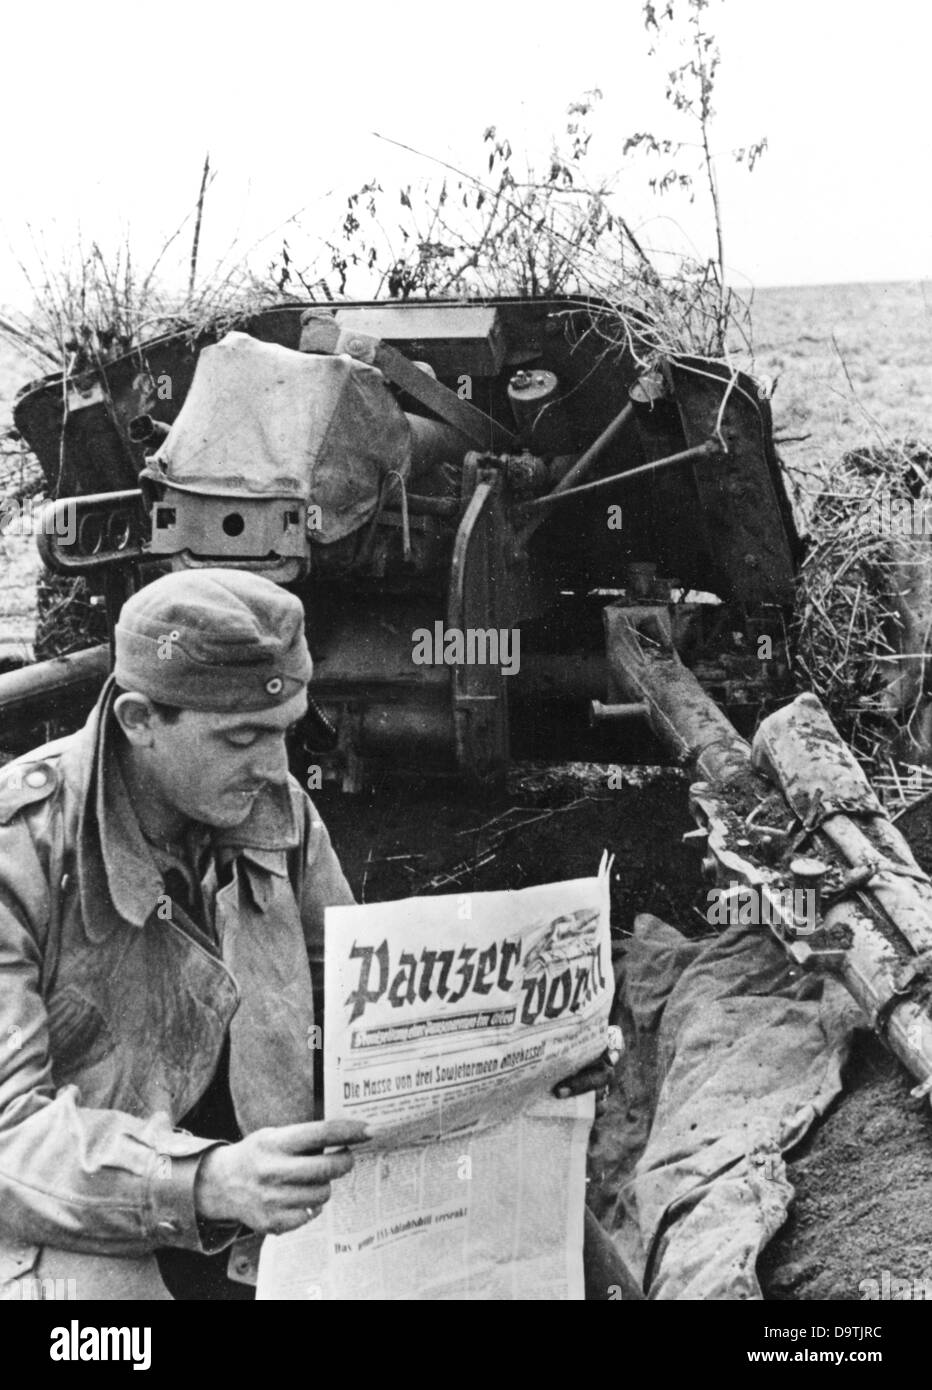 La propagande nazie! Au dos de l'image se lit: «Le journal de devant dans la ligne de front. Lors d'une pause au combat, un soldat de l'artillerie antichar lit le « Panzer voran » (tanks Ahead), le journal du front de l'armée de chars. » Image du Front de l'est, publiée le 12 juin 1942. Fotoarchiv für Zeitgeschichte Banque D'Images